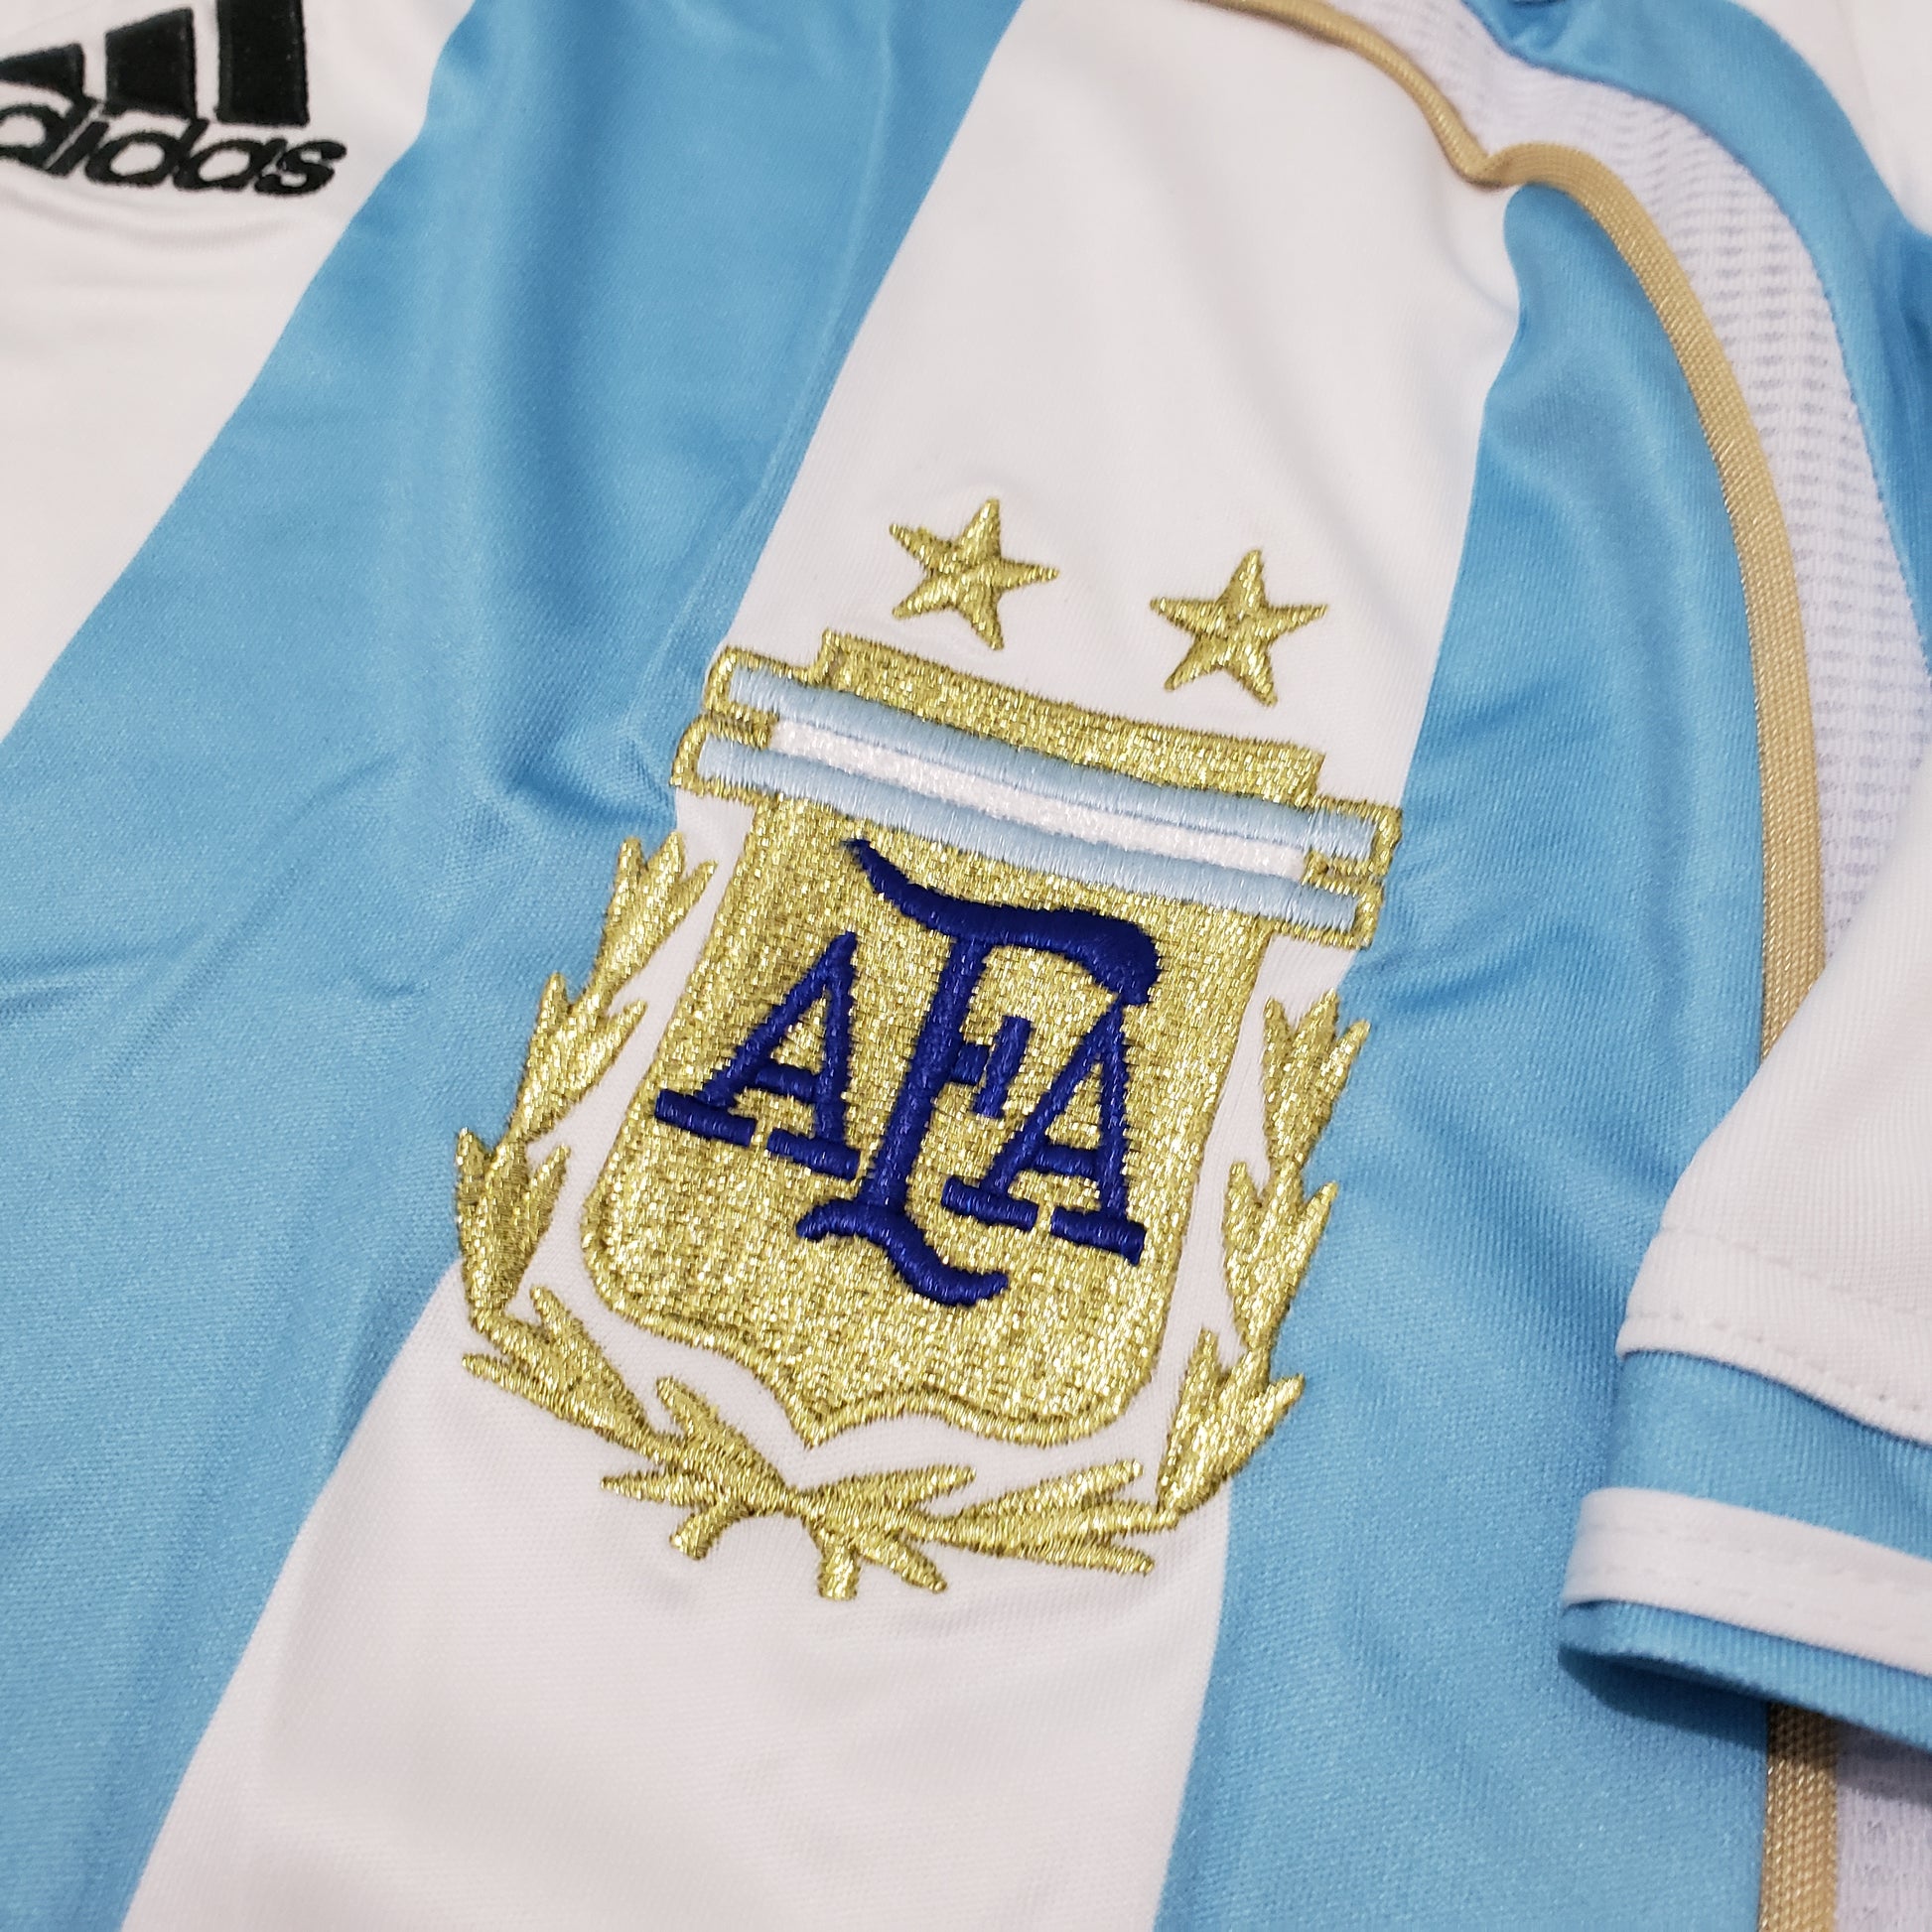 Argentina titular 2006 - Thunder Internacional